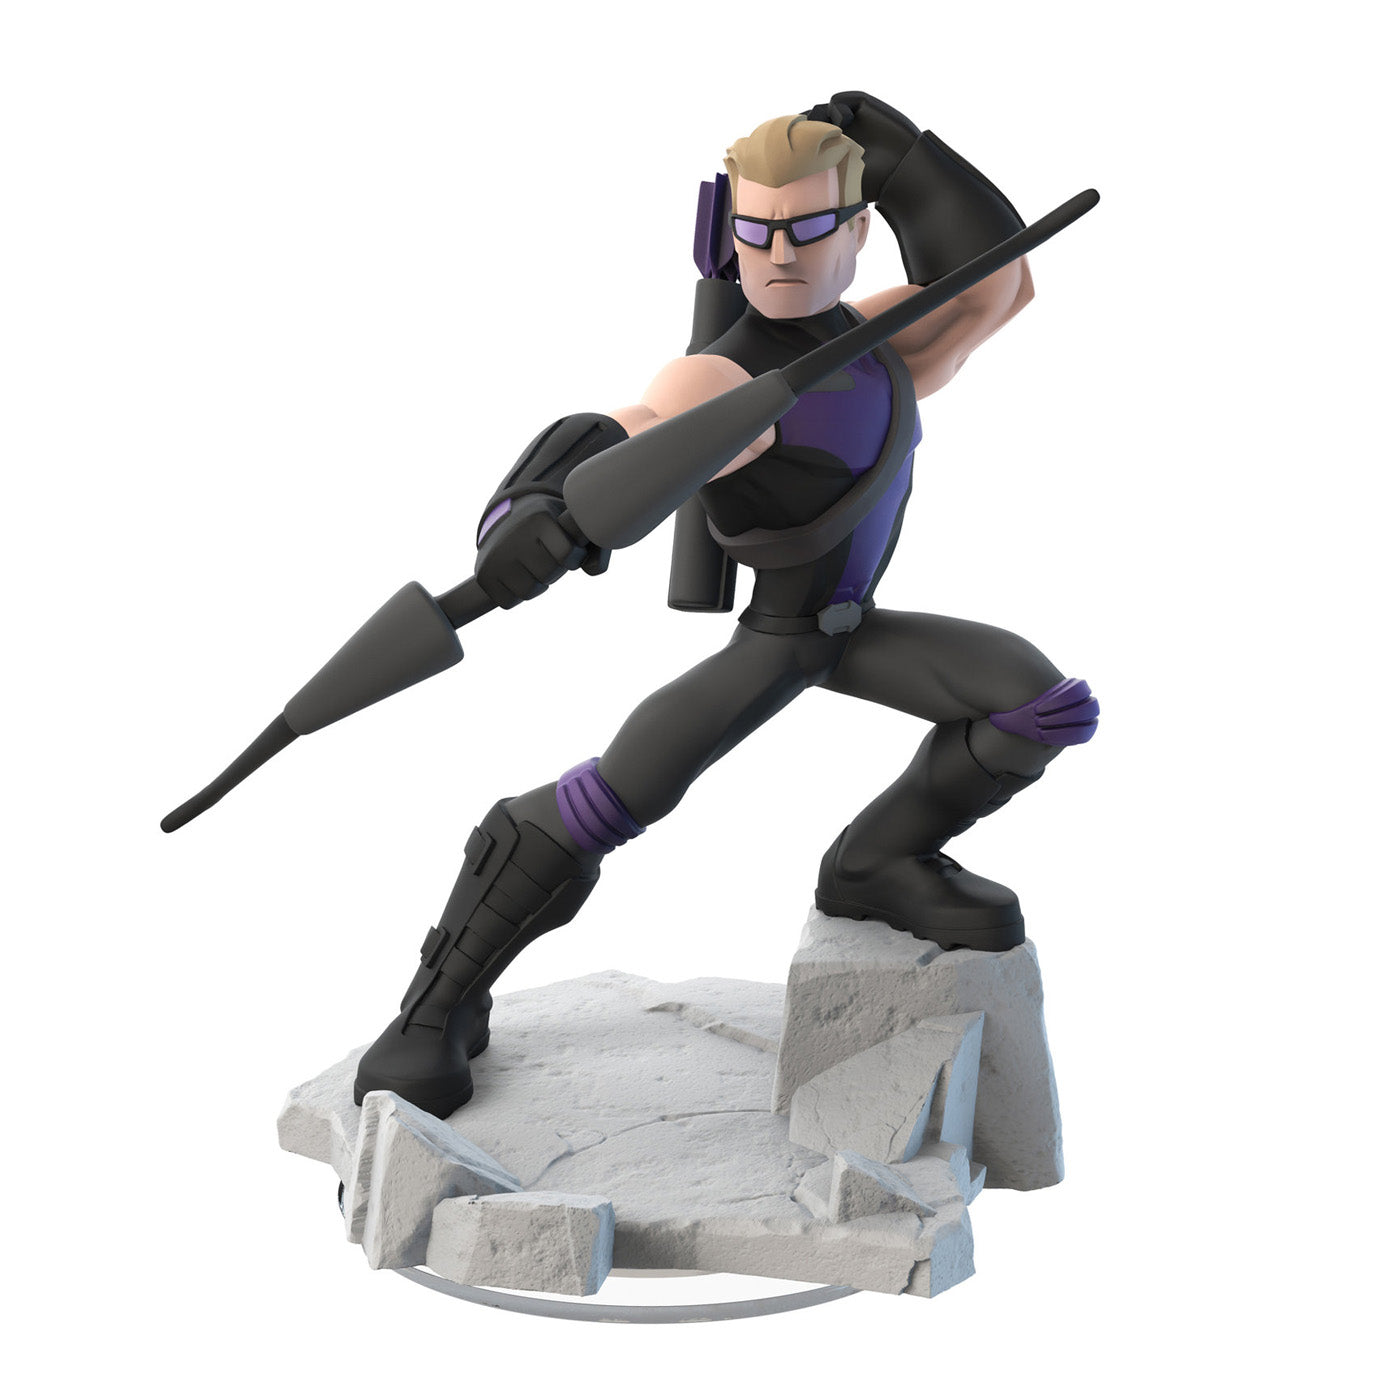 Disney Infinity 2.0 Character: Hawkeye